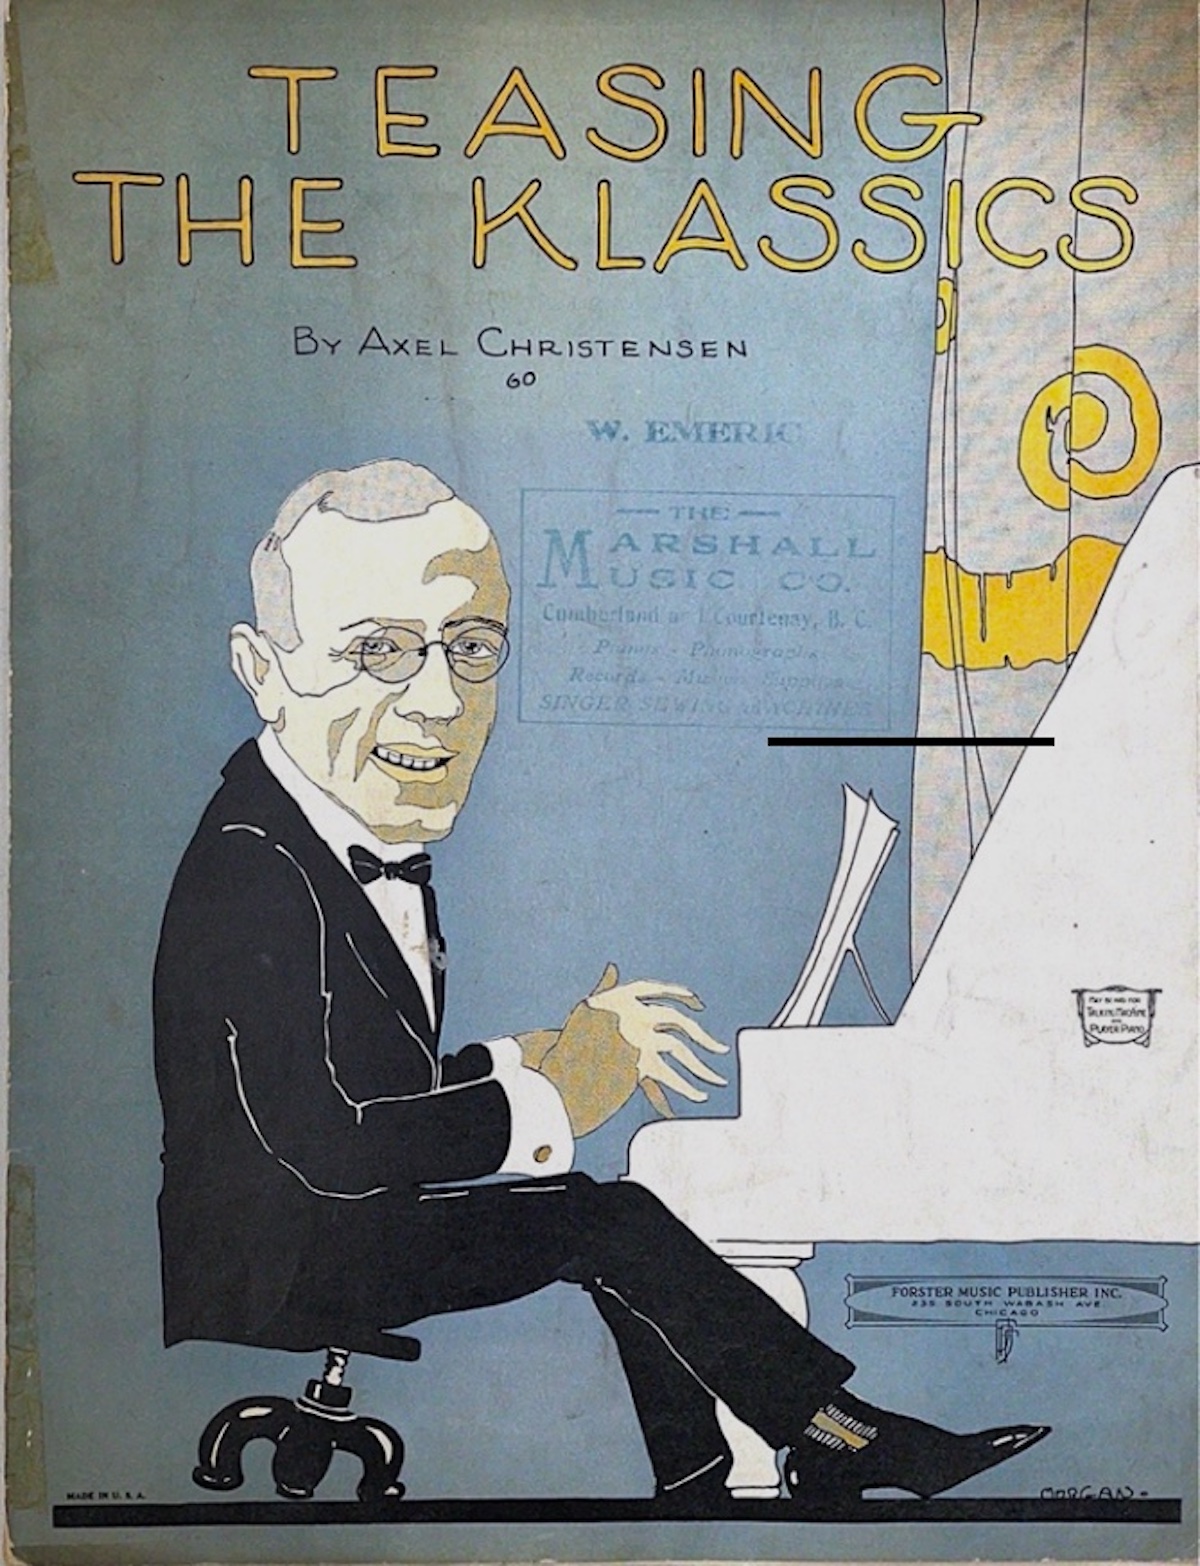 Sheet music cover for Teasing the
                          Klassics (Axel Christensen)